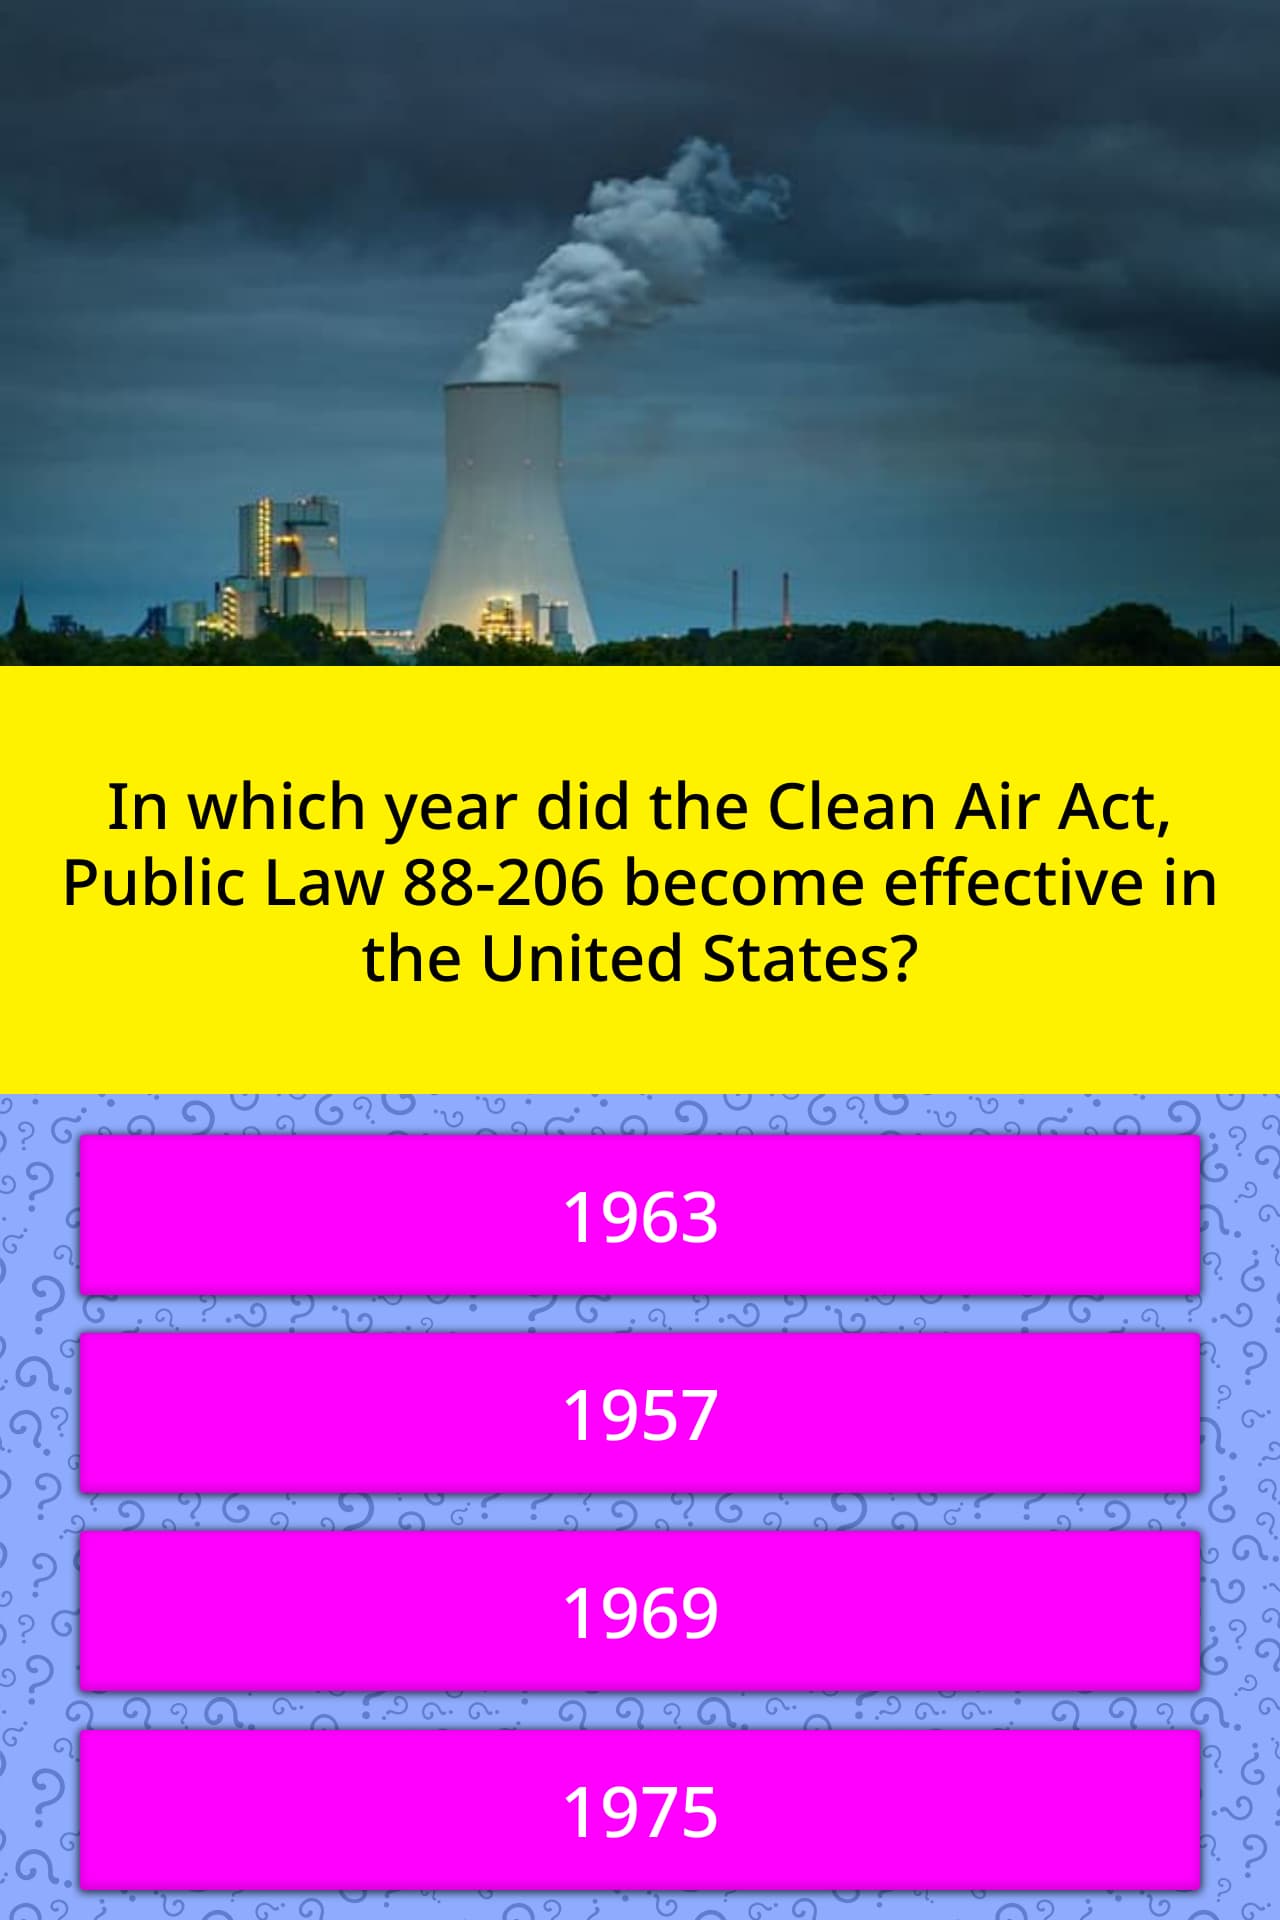 clean air act